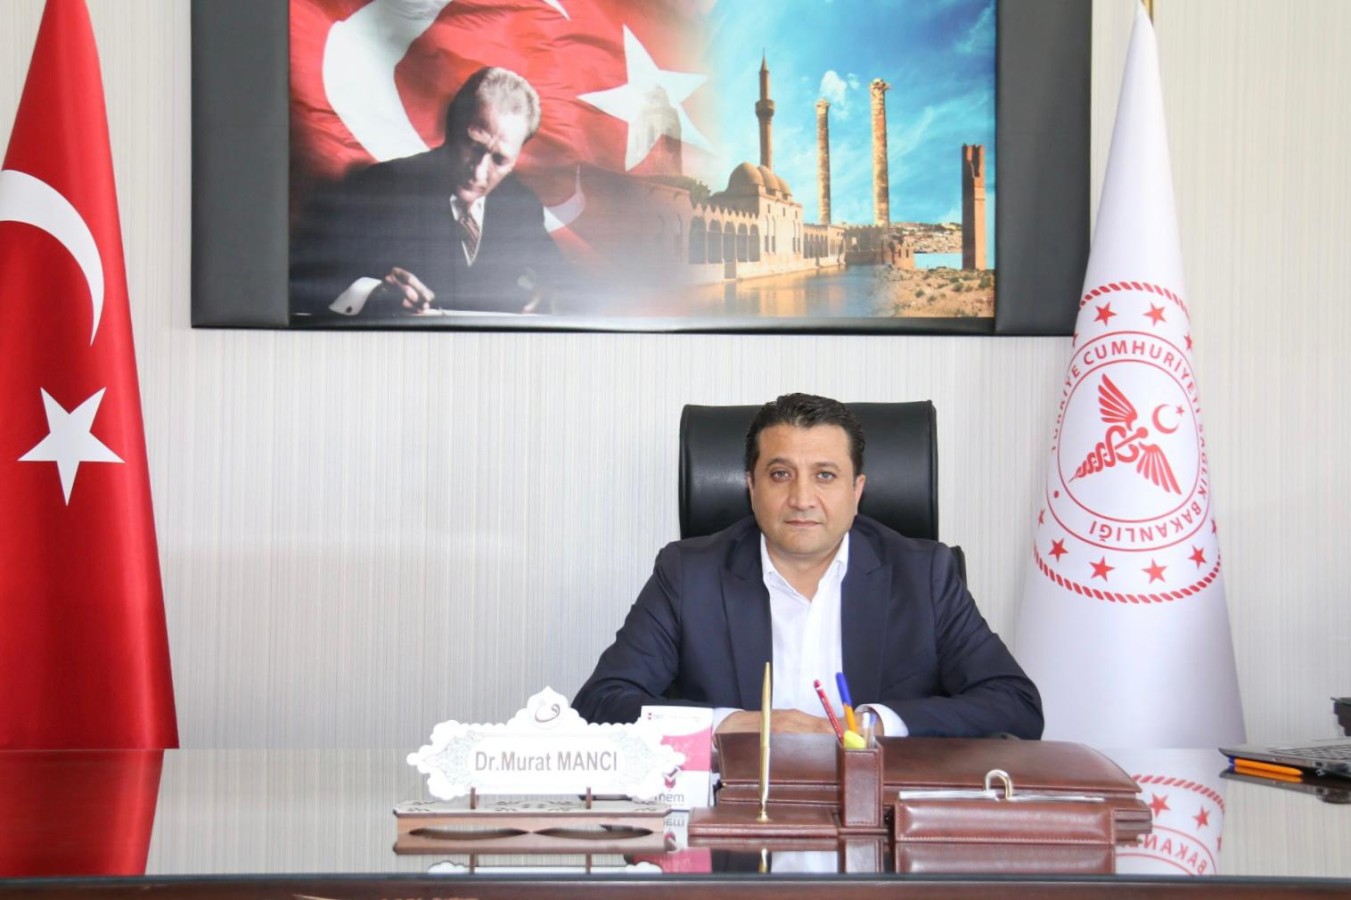 Suriye Görev Gücü başkanlığına Dr. Murat Mancı atandı;